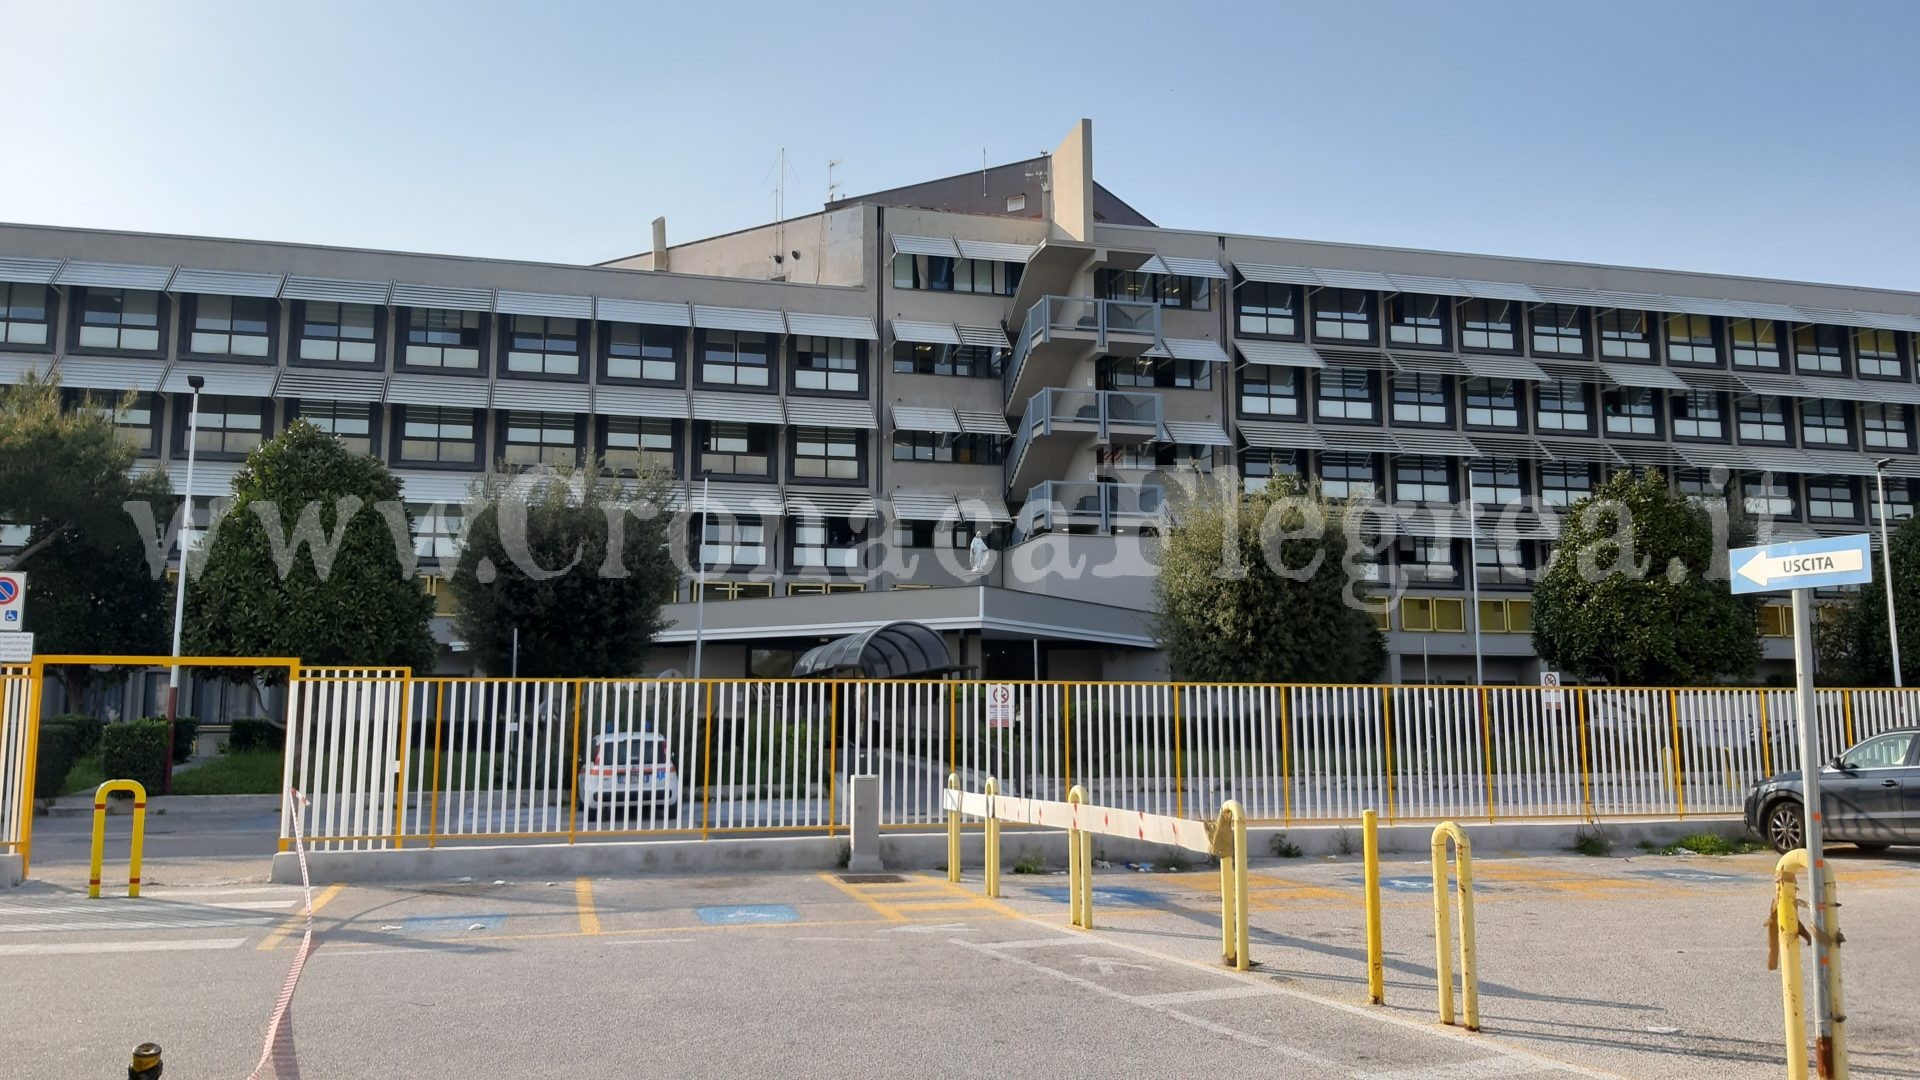 Lavori all’ospedale di Pozzuoli: sospesi i parti per 30 giorni